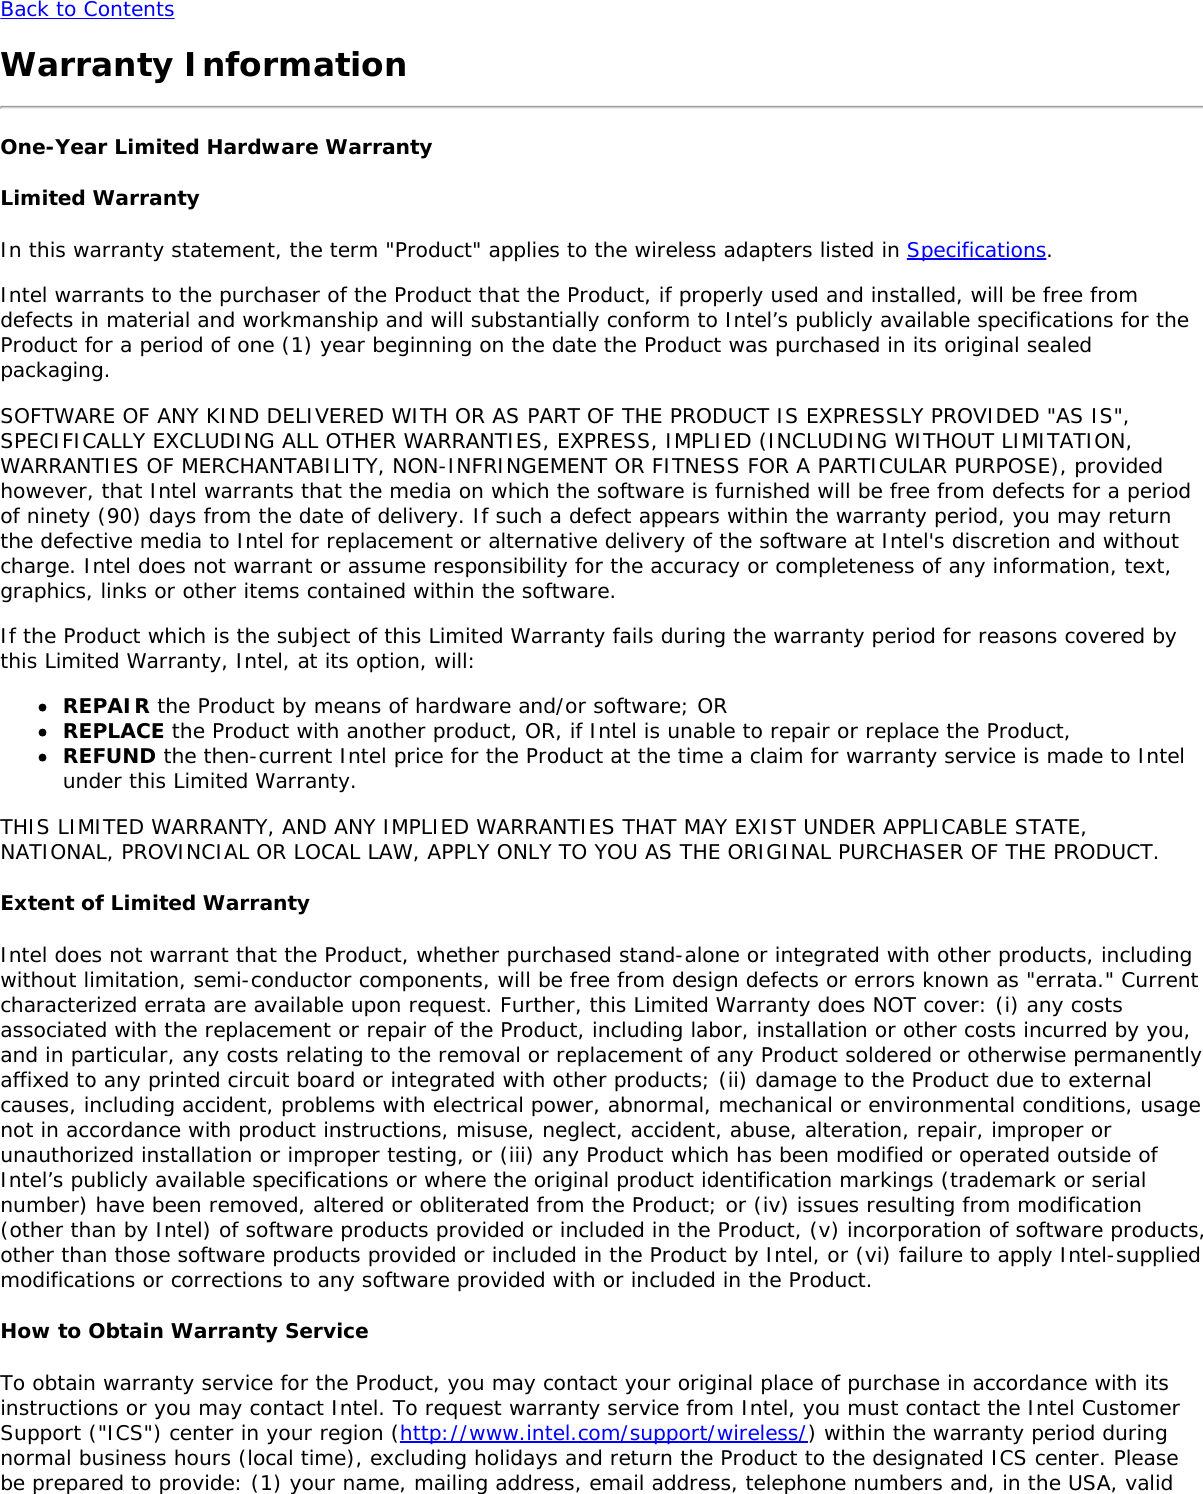 Page 70 of Hewlett Packard Enterprise EL3009260 Wifi/BT Module User Manual Intel     WiFi Adapter Information Guide